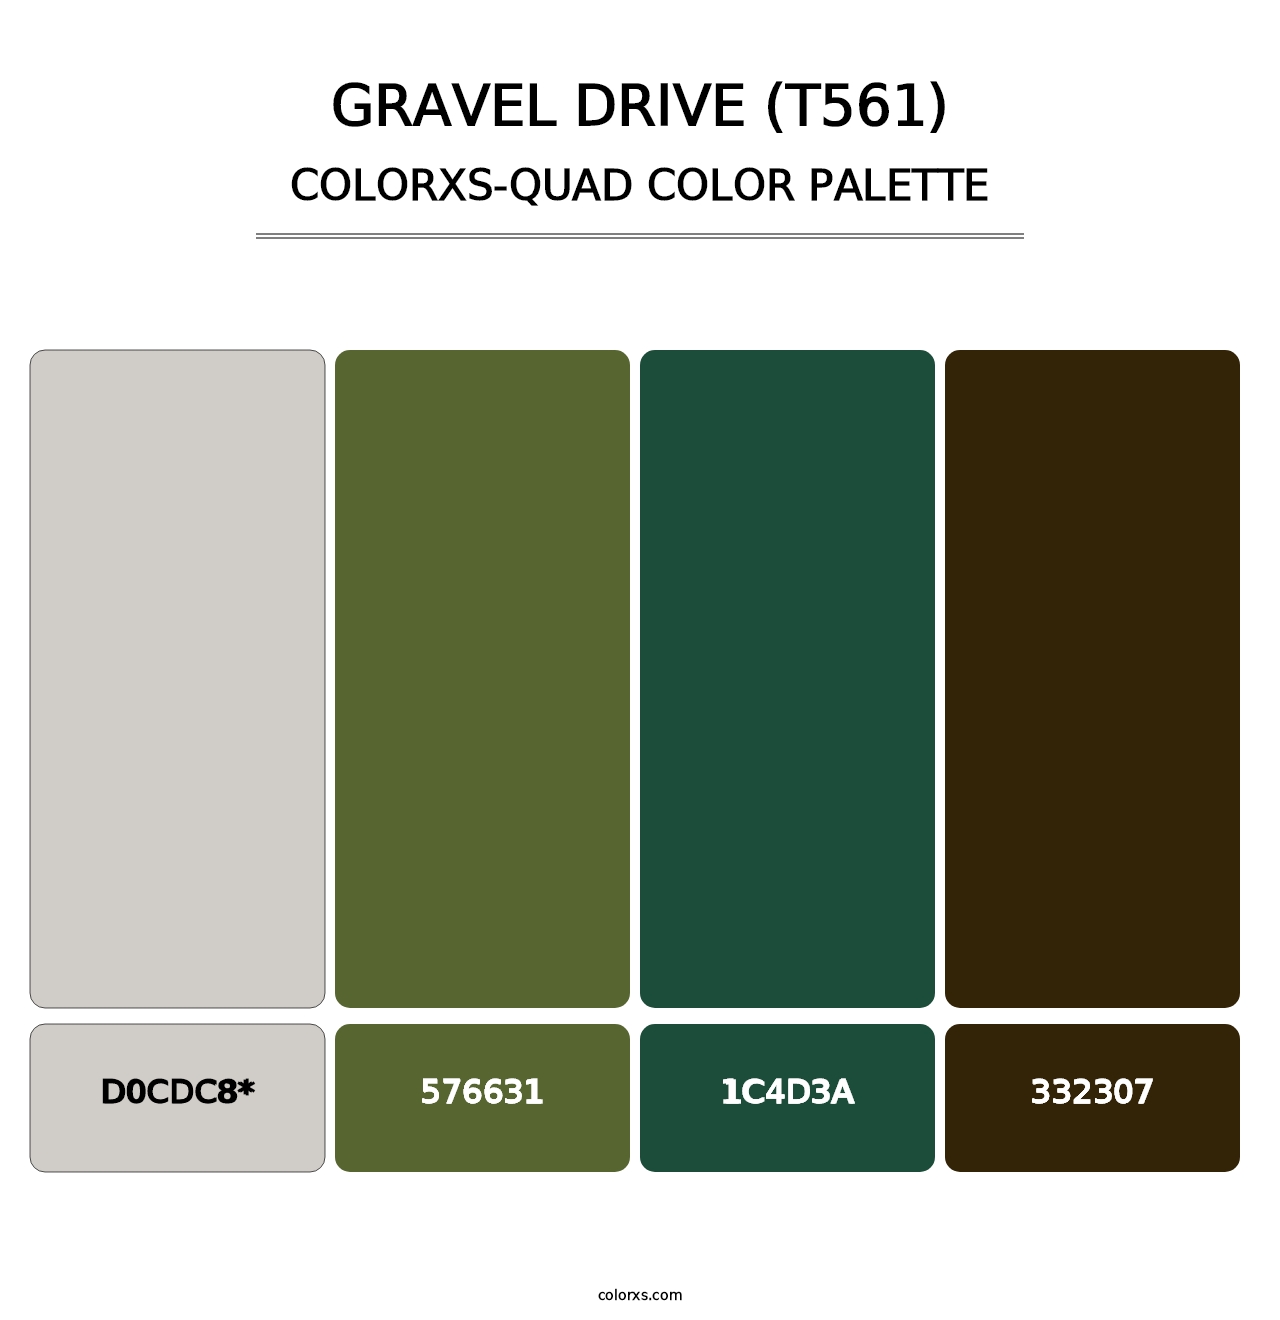 Gravel Drive (T561) - Colorxs Quad Palette